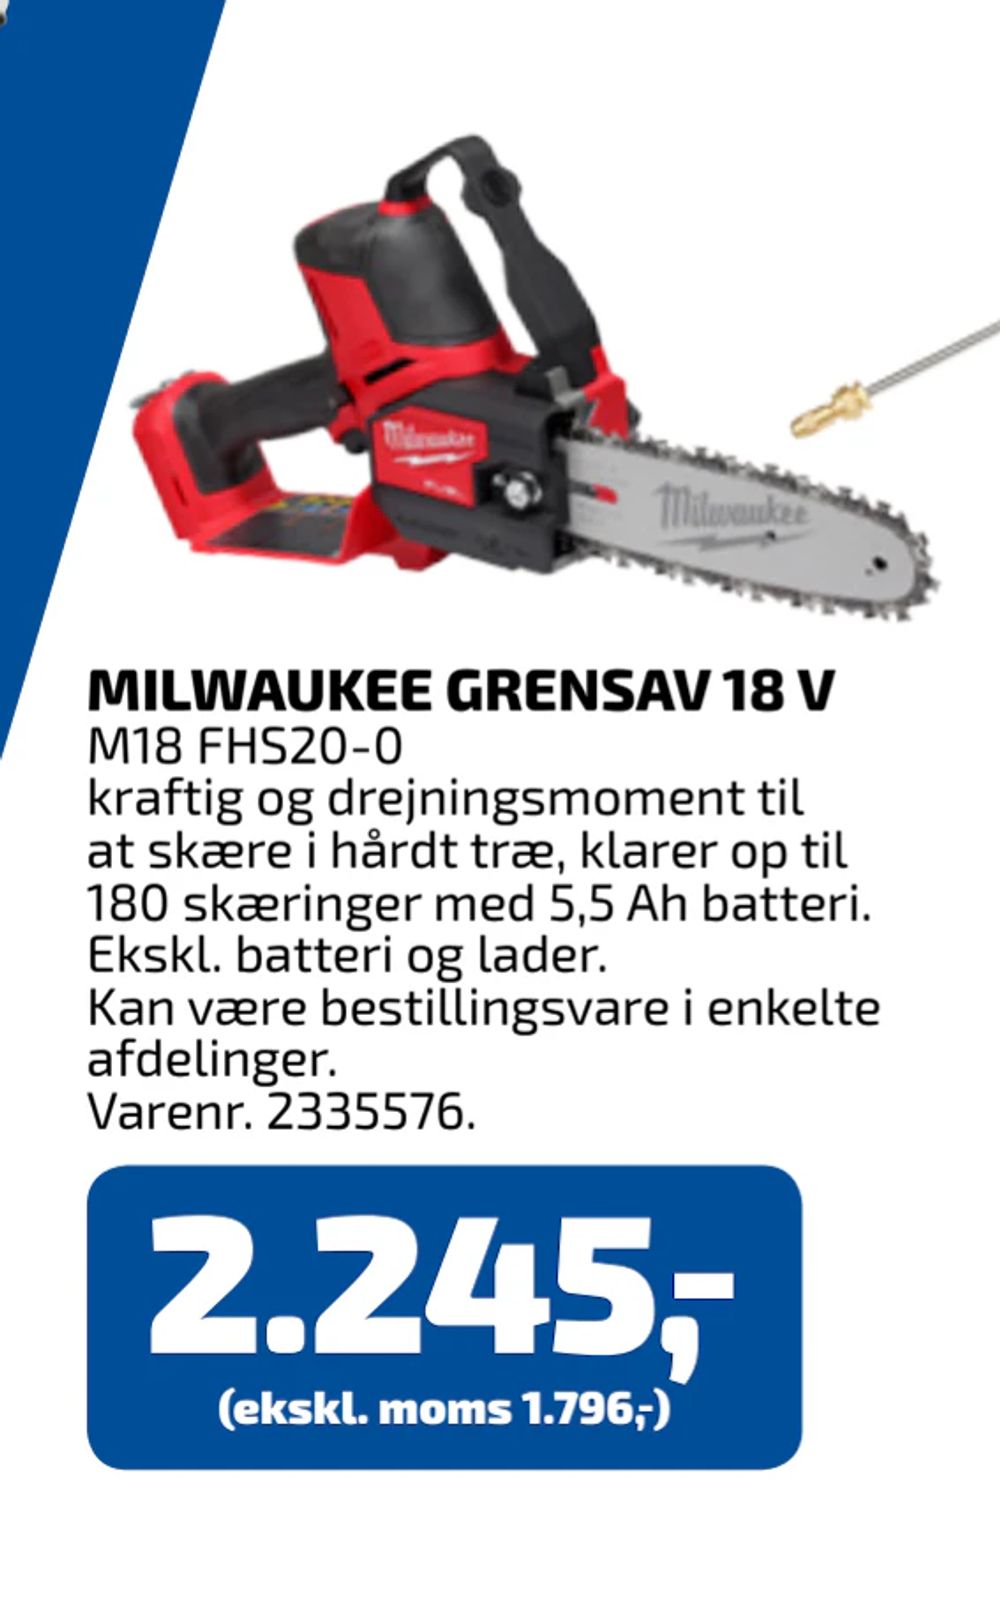 Tilbud på MILWAUKEE GRENSAV 18 V fra Davidsen til 2.245 kr.